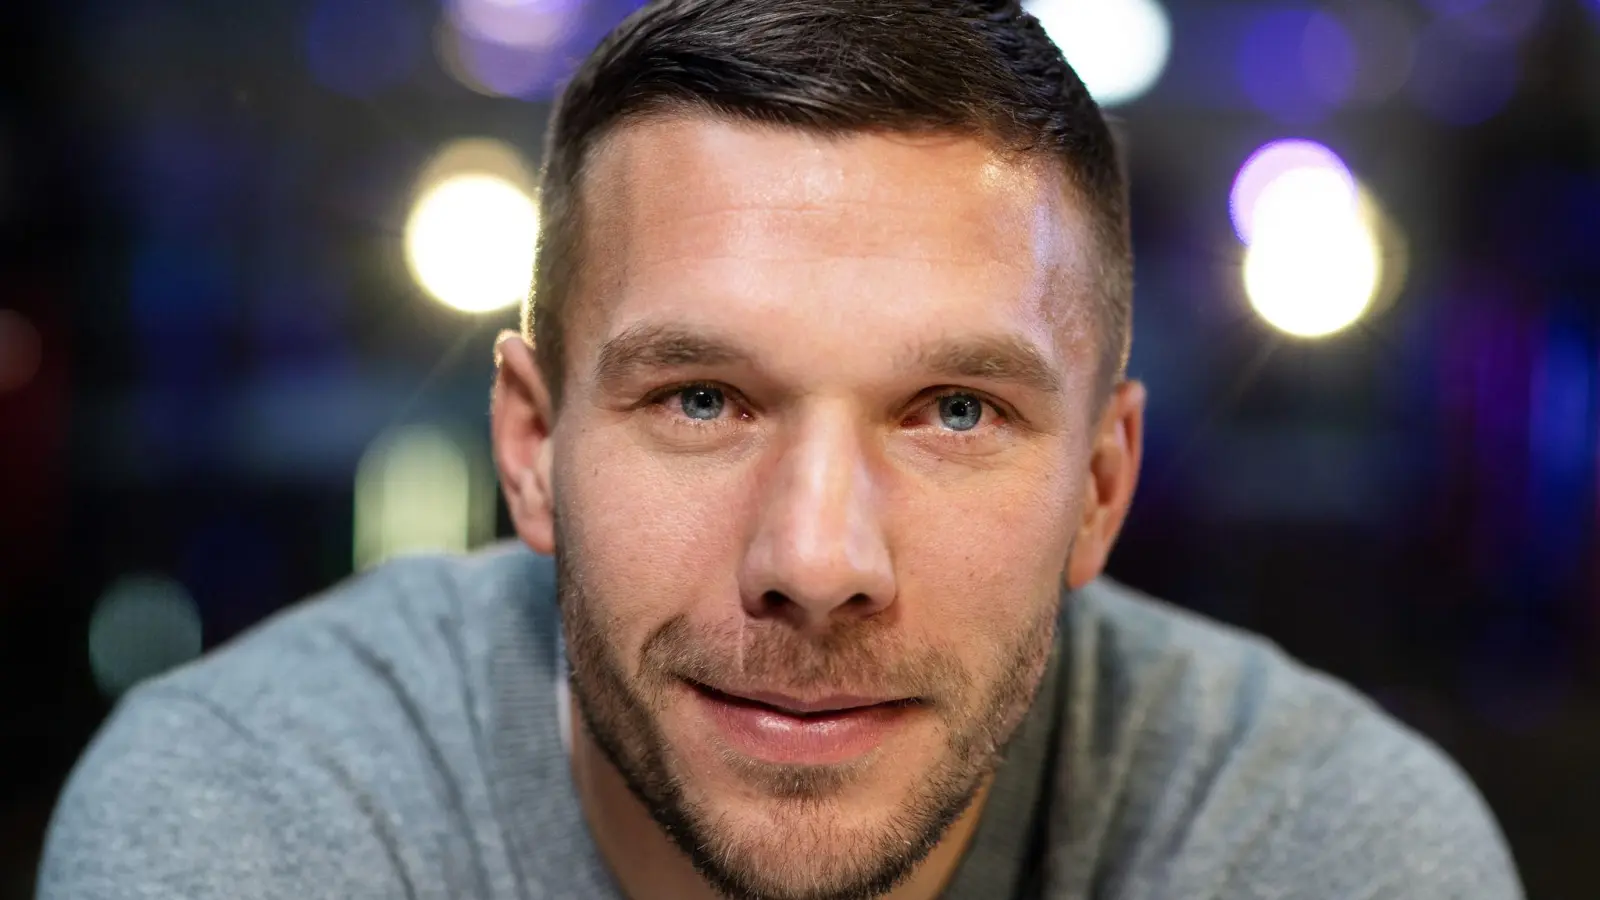 Der frühere Fußball-Nationalspieler Lukas Podolski lächelt in die Kamera. (Foto: Bernd Thissen/dpa)